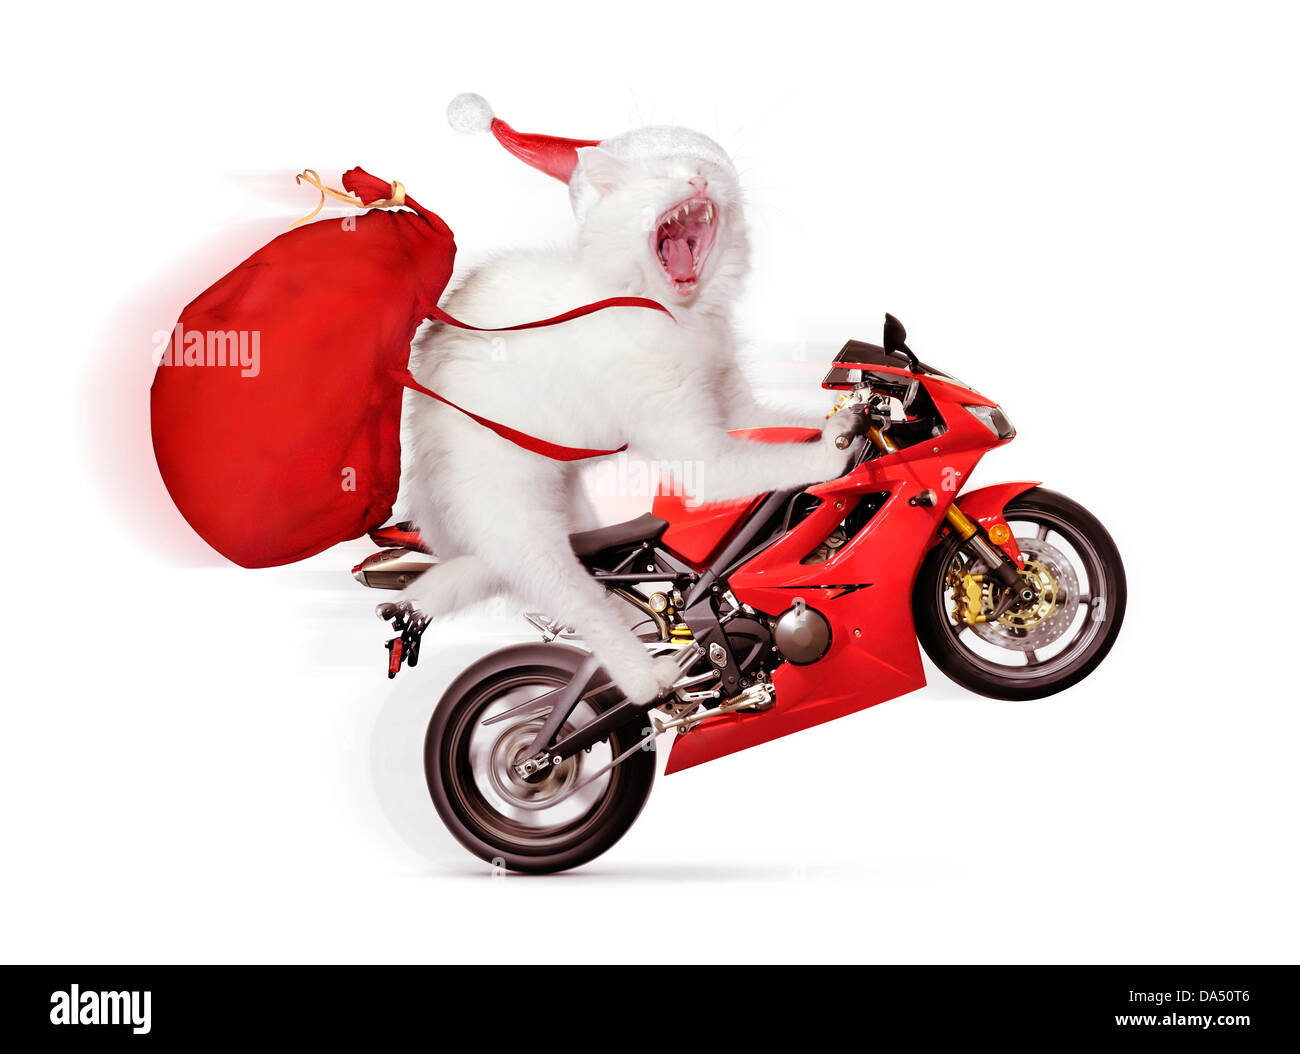 Licenza disponibile all'indirizzo MaximImages.com - divertente concetto natalizio di un gatto bianco che fa un grillo su una moto sportiva rossa, indossando un cappello da Babbo Natale Foto Stock